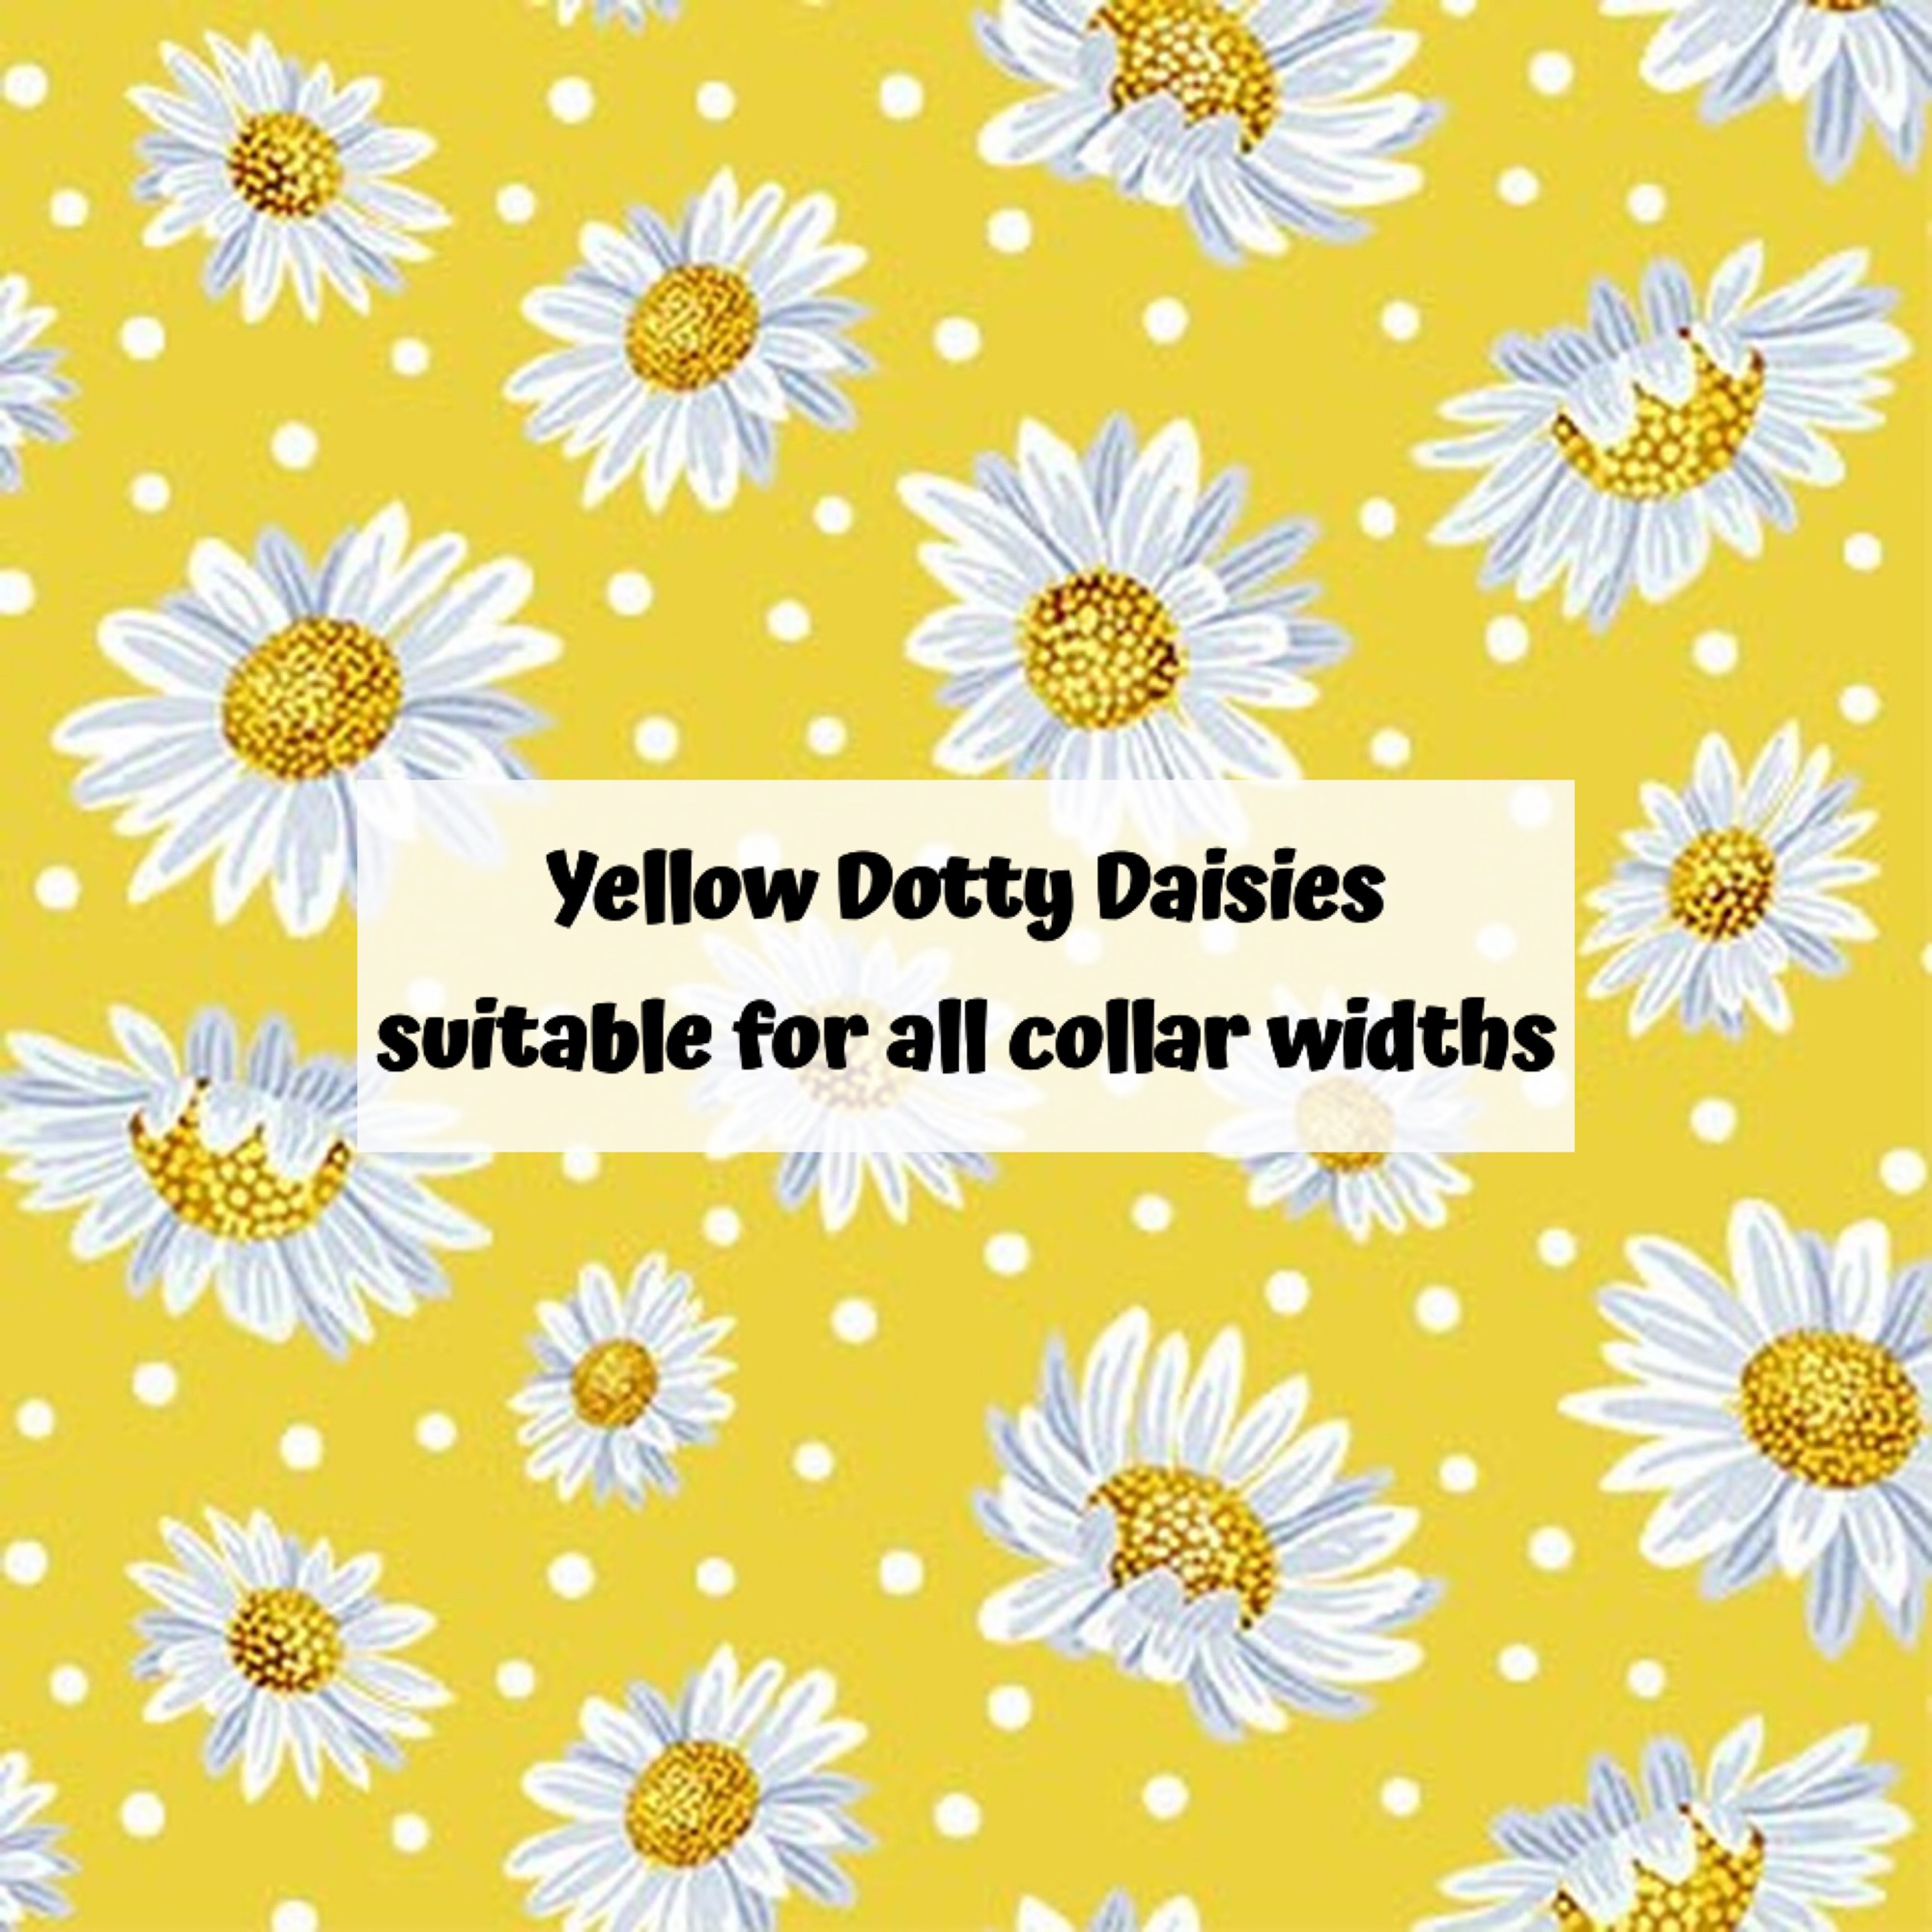 Yellow Dotty Daisies